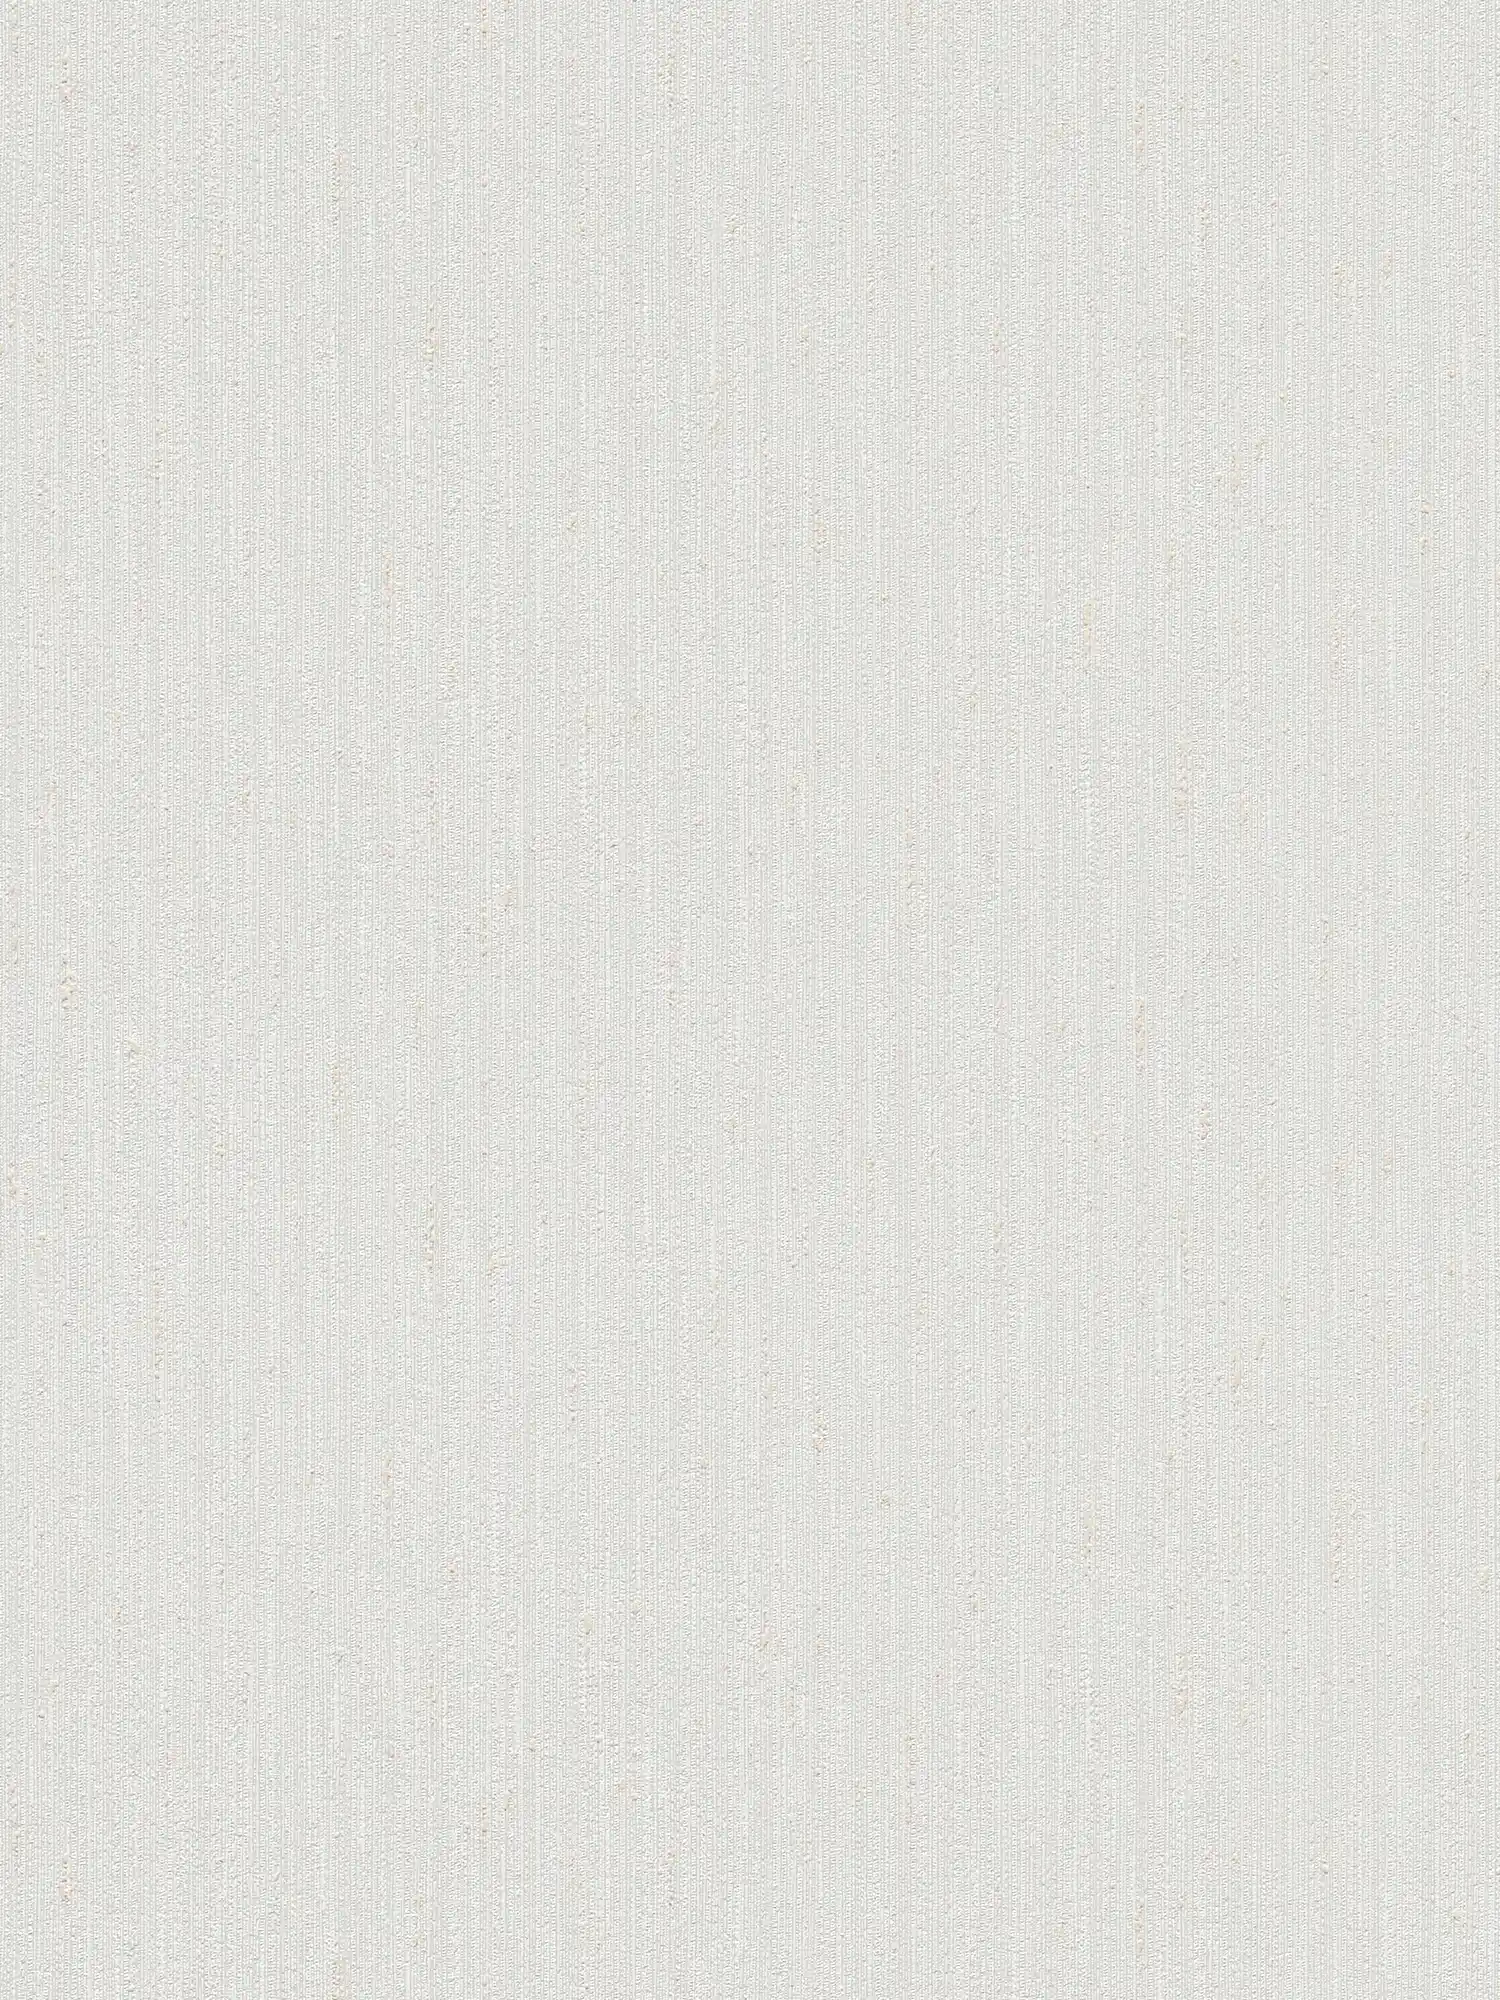             papier peint en papier uni à texture légère - gris, taupe
        